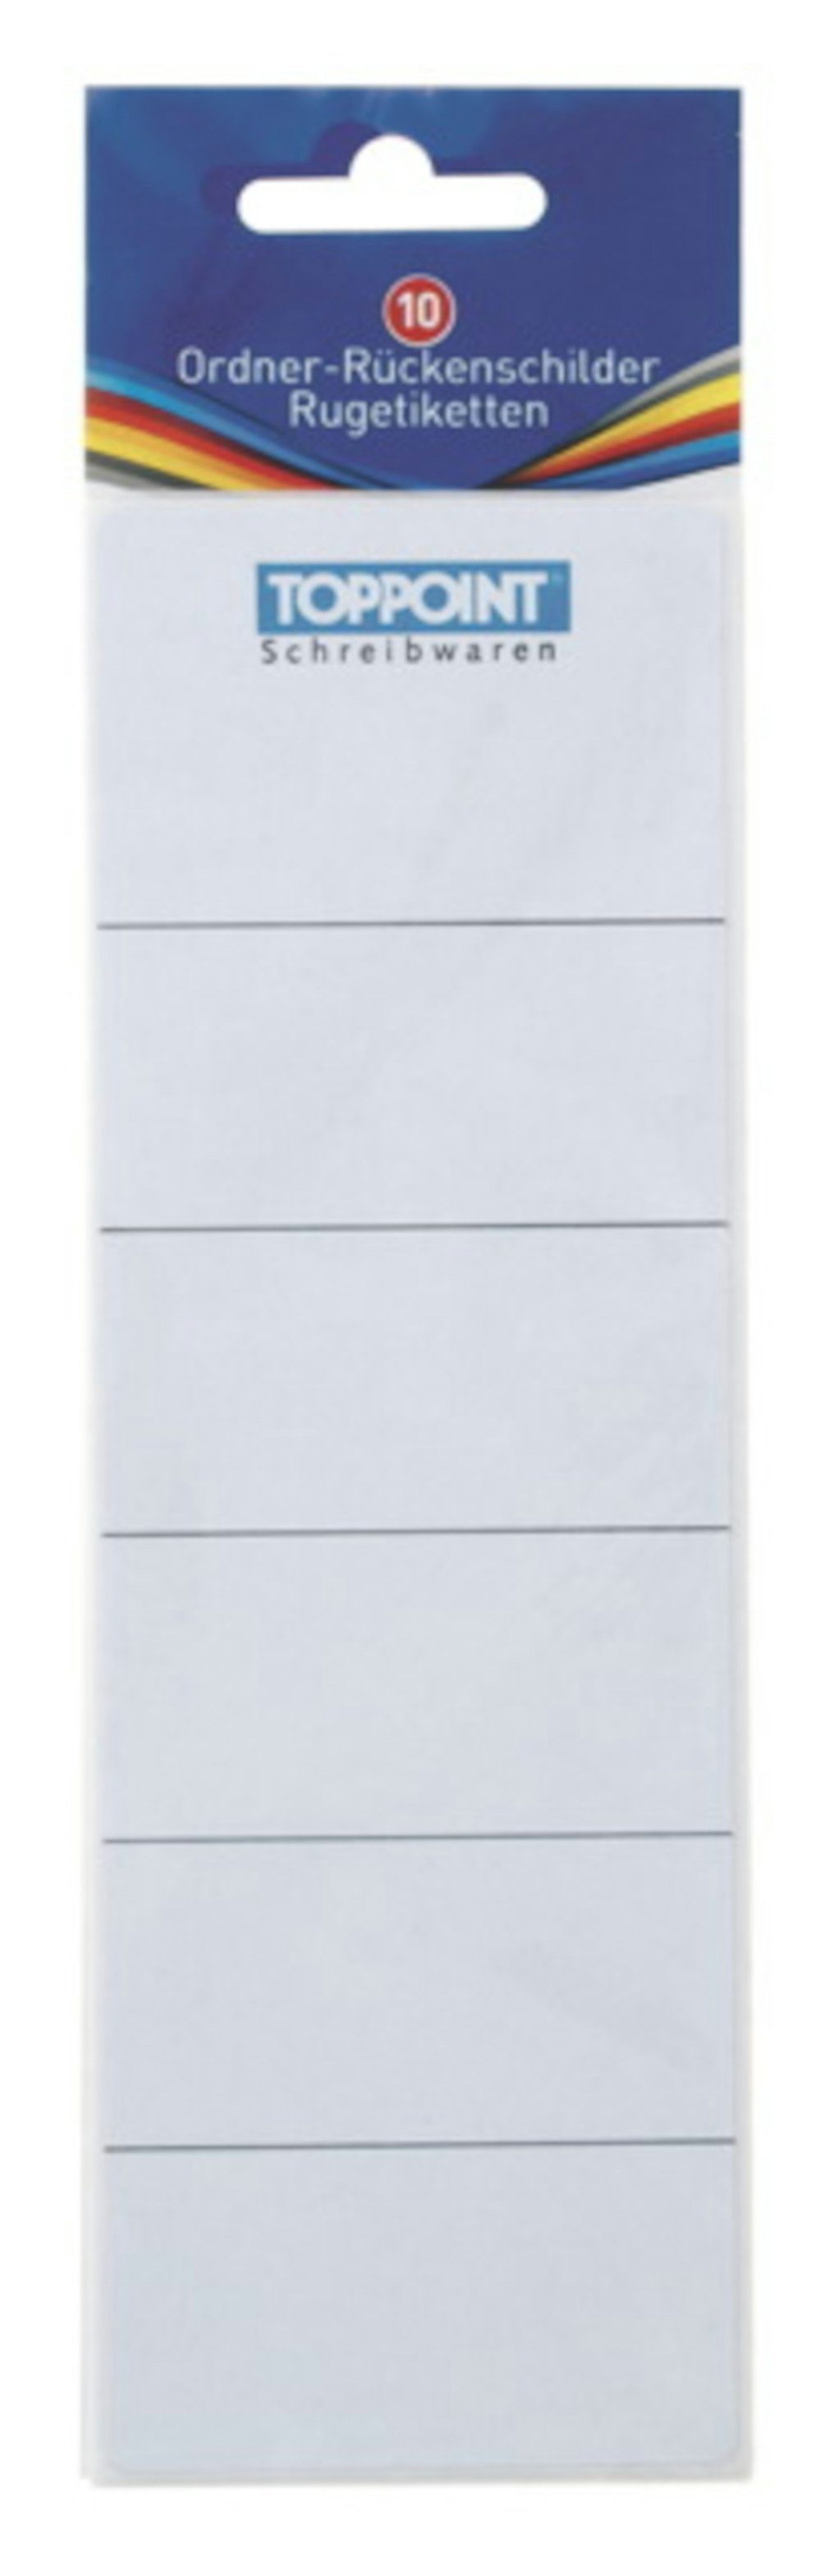 Stylex Schreibwaren Etiketten 100 (10x 10) Ordner Rückenschilder Ordneretiketten